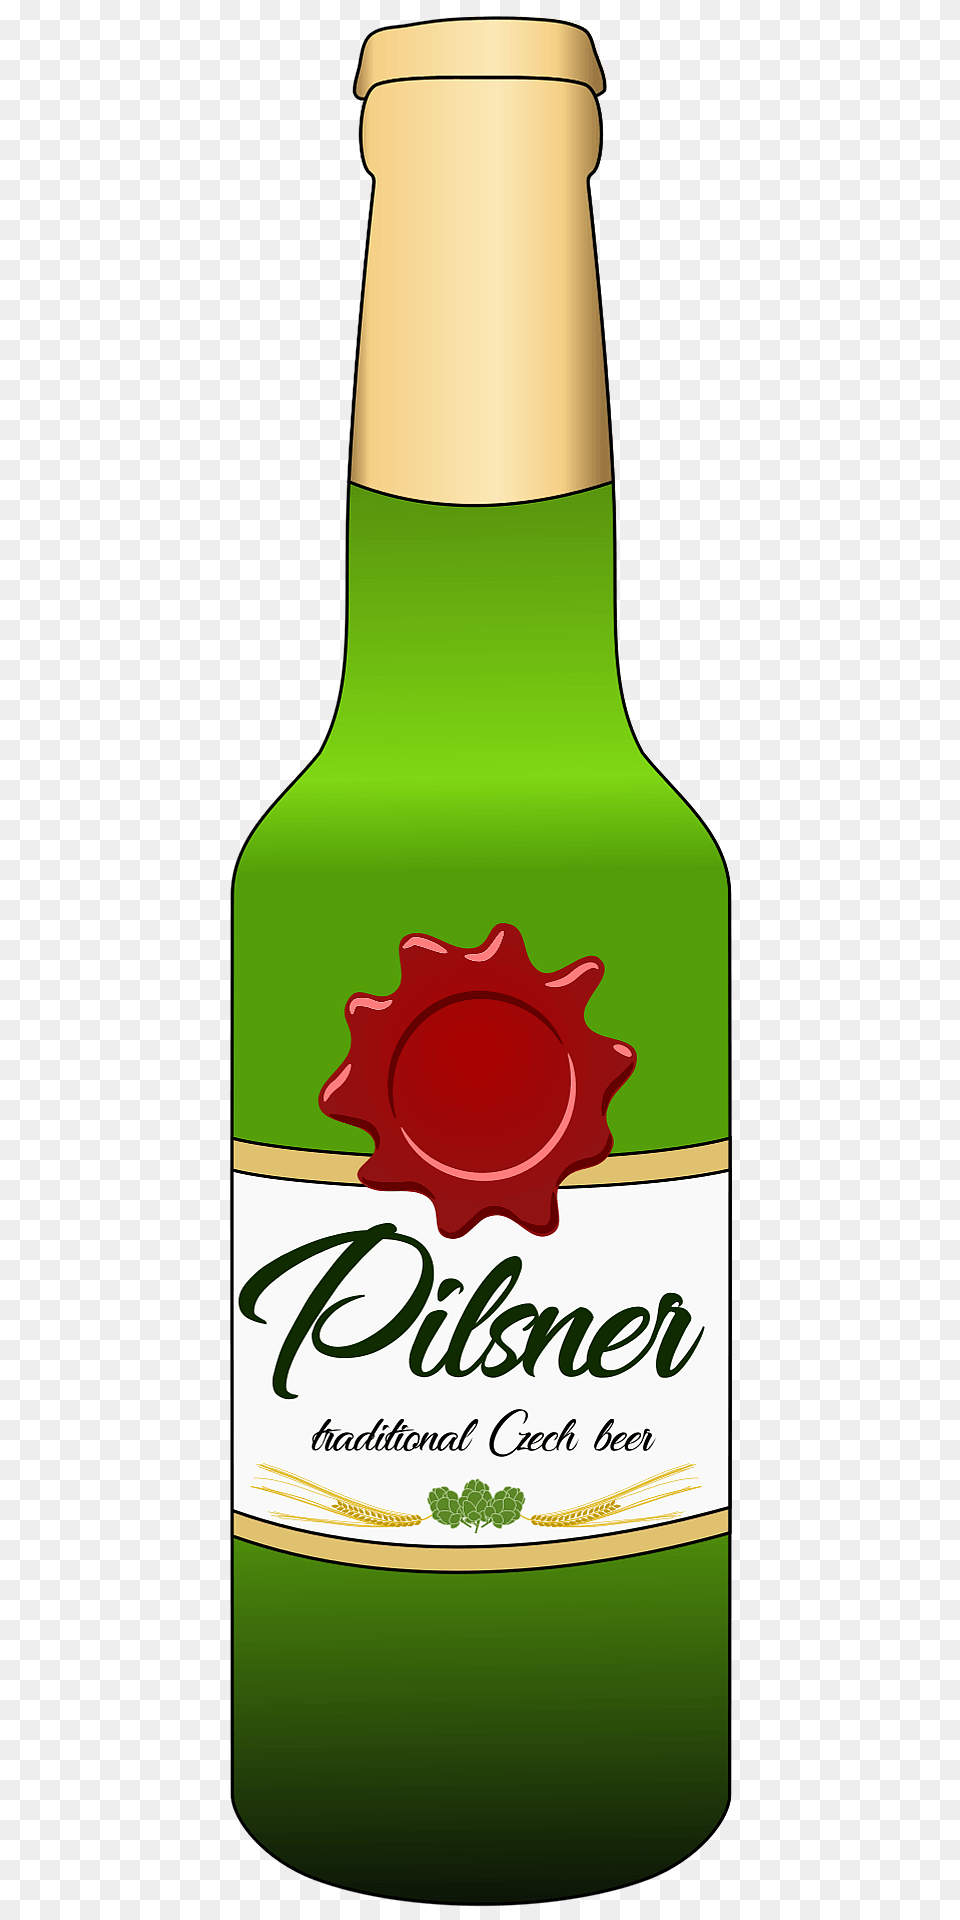 Pilsner Beer Bottle Clipart, Alcohol, Beverage, Beer Bottle, Liquor Free Png